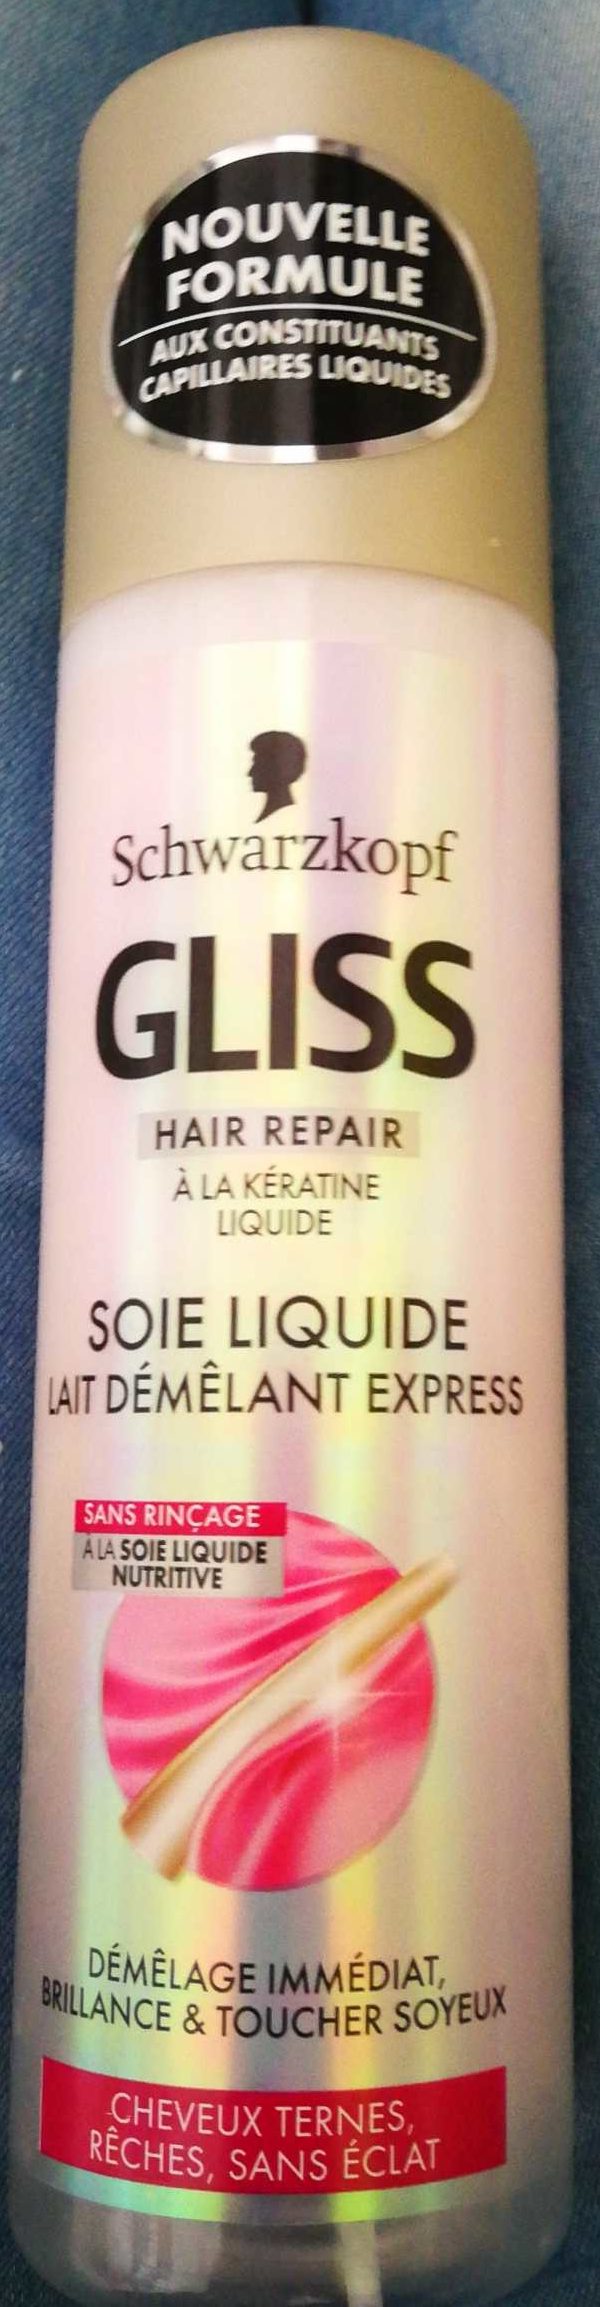 Gliss Soie liquide - Tuote - fr